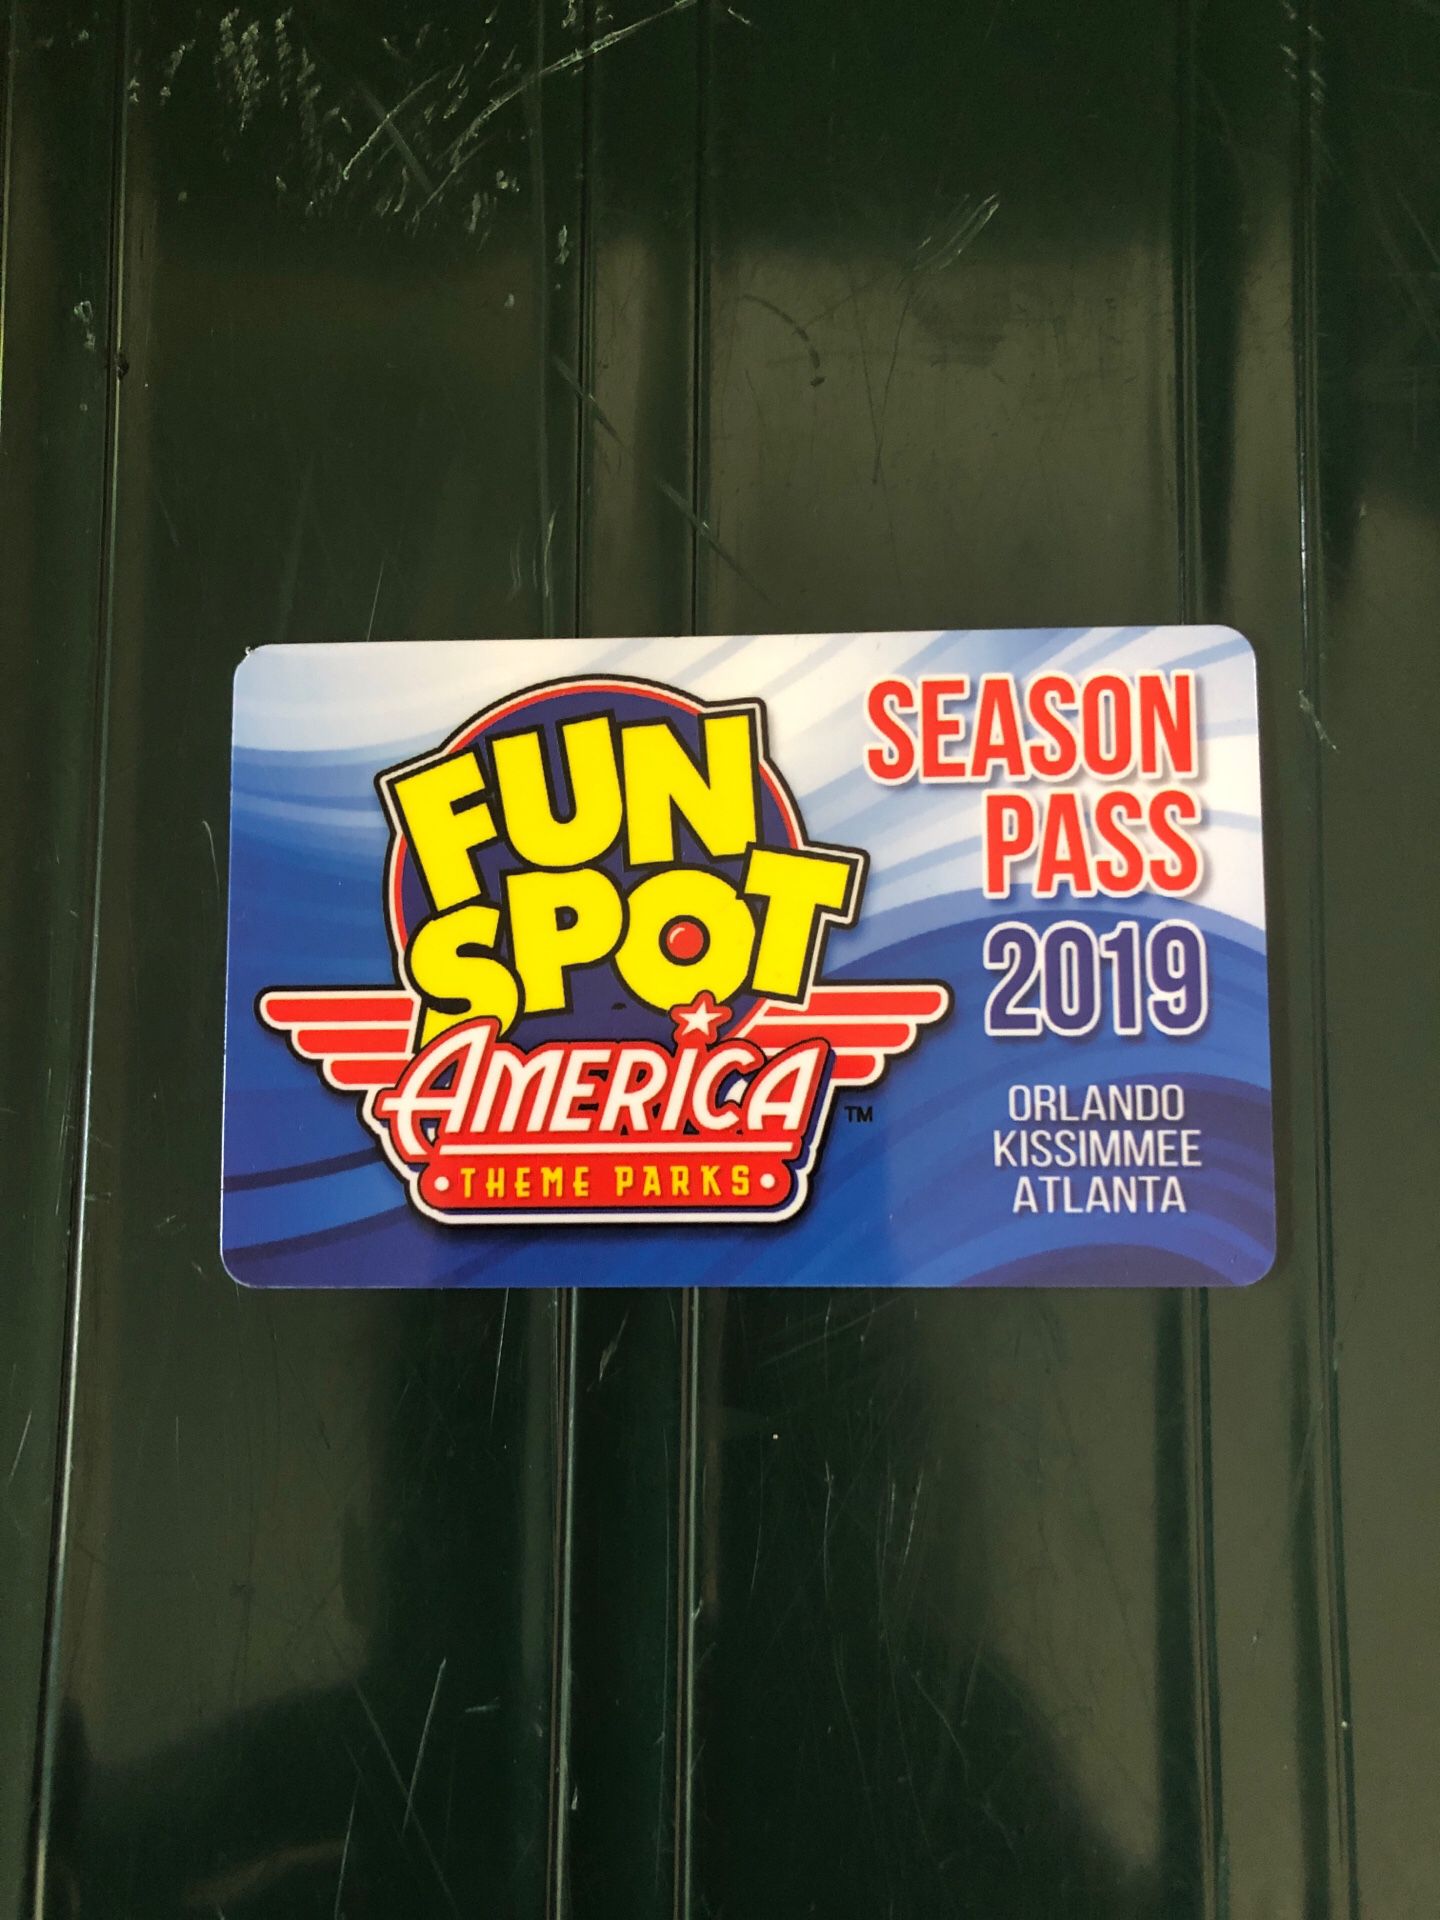 One-Old Town/ Season Pass 2019 Fun Spot America Theme Parks-Orlando/Kissimmee/Atlanta